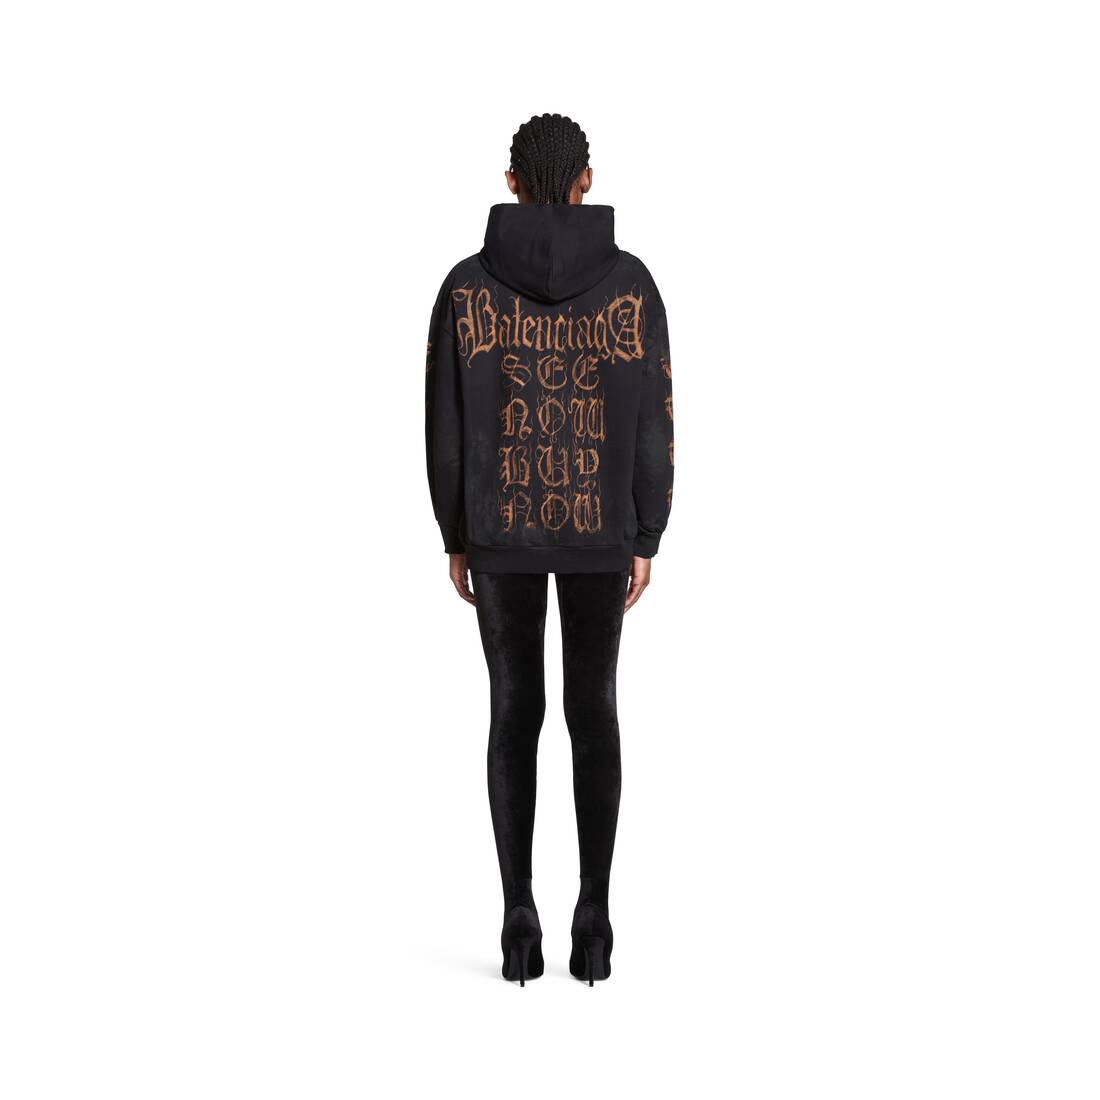 Louis Vuitton Black Cotton Quilted 3D Chain Effect Sweatshirt XS